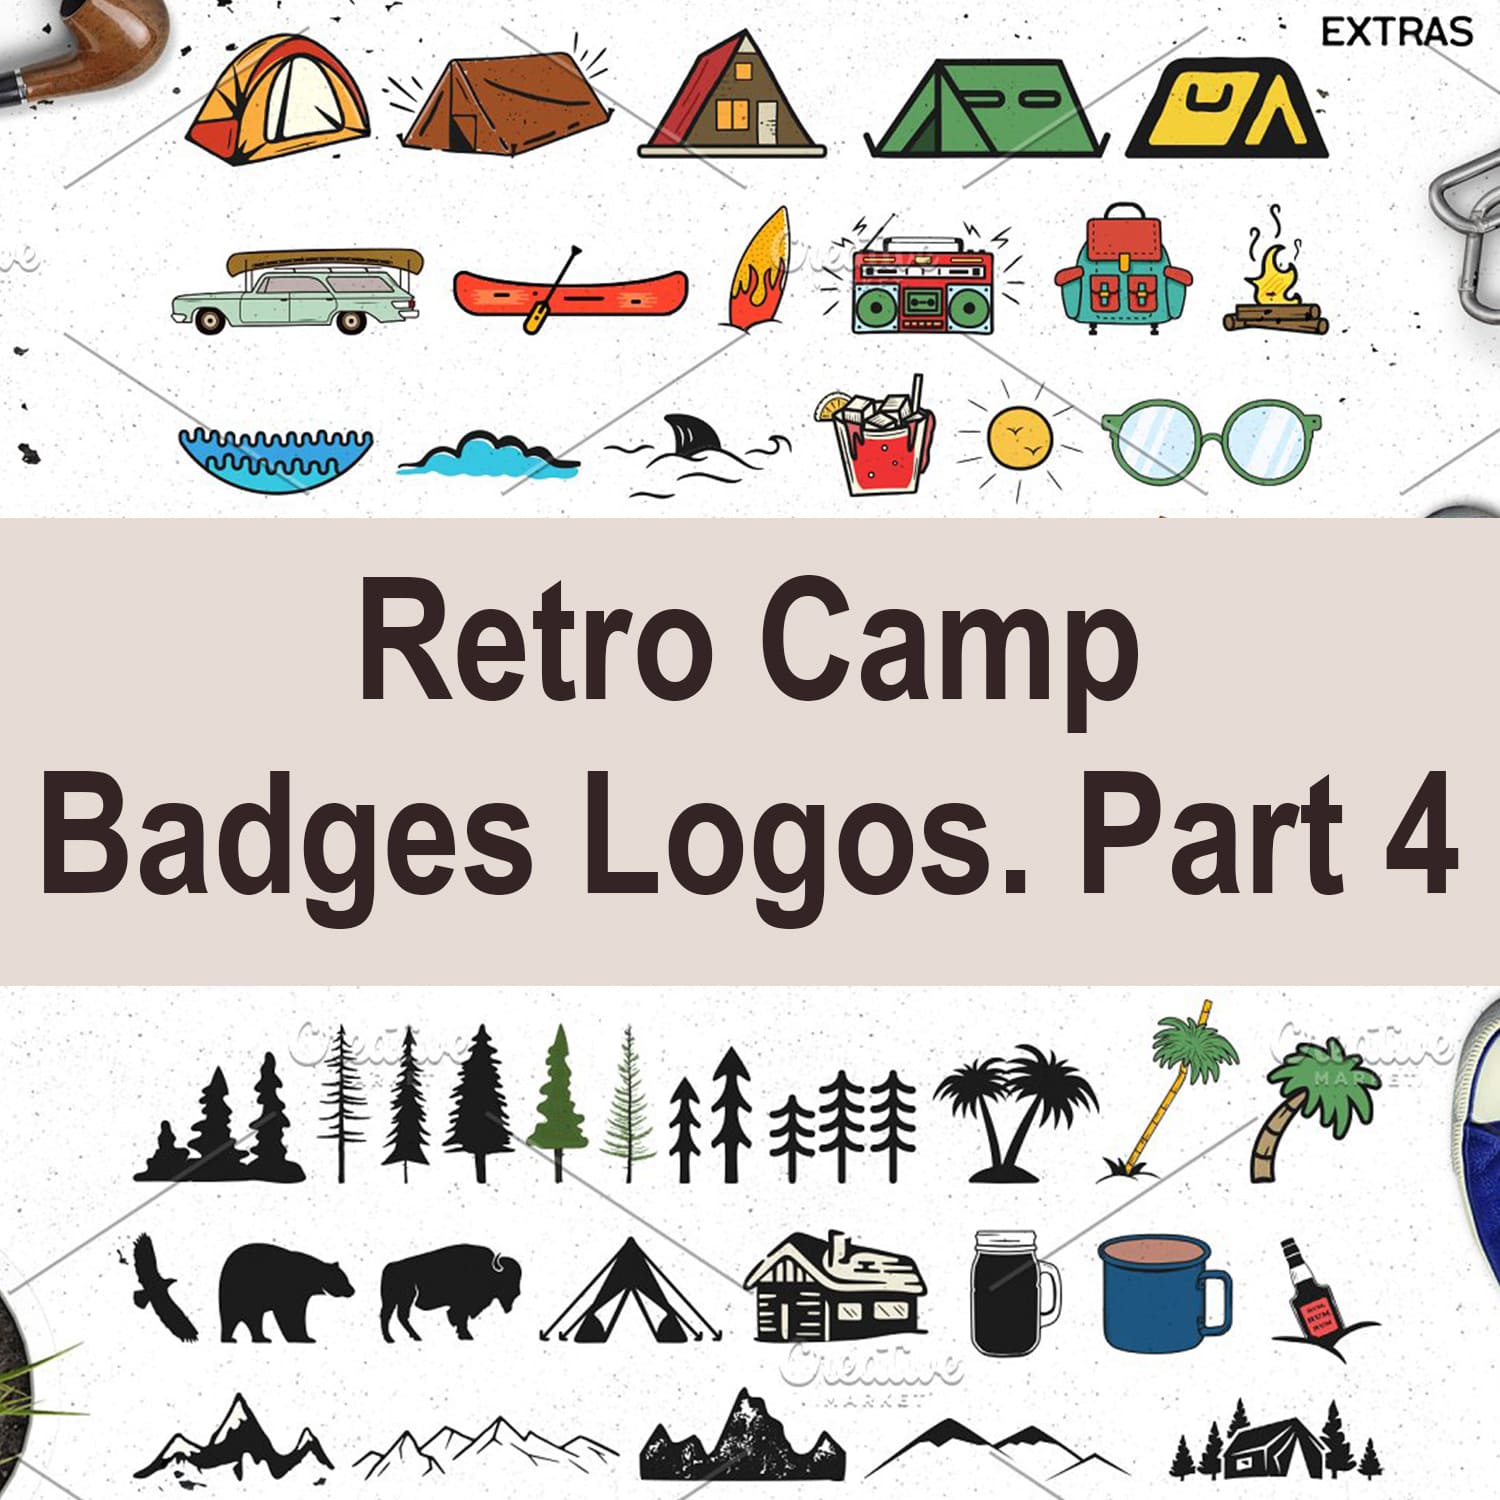 Retro Camp Badges Logos. Part 4 main cover.